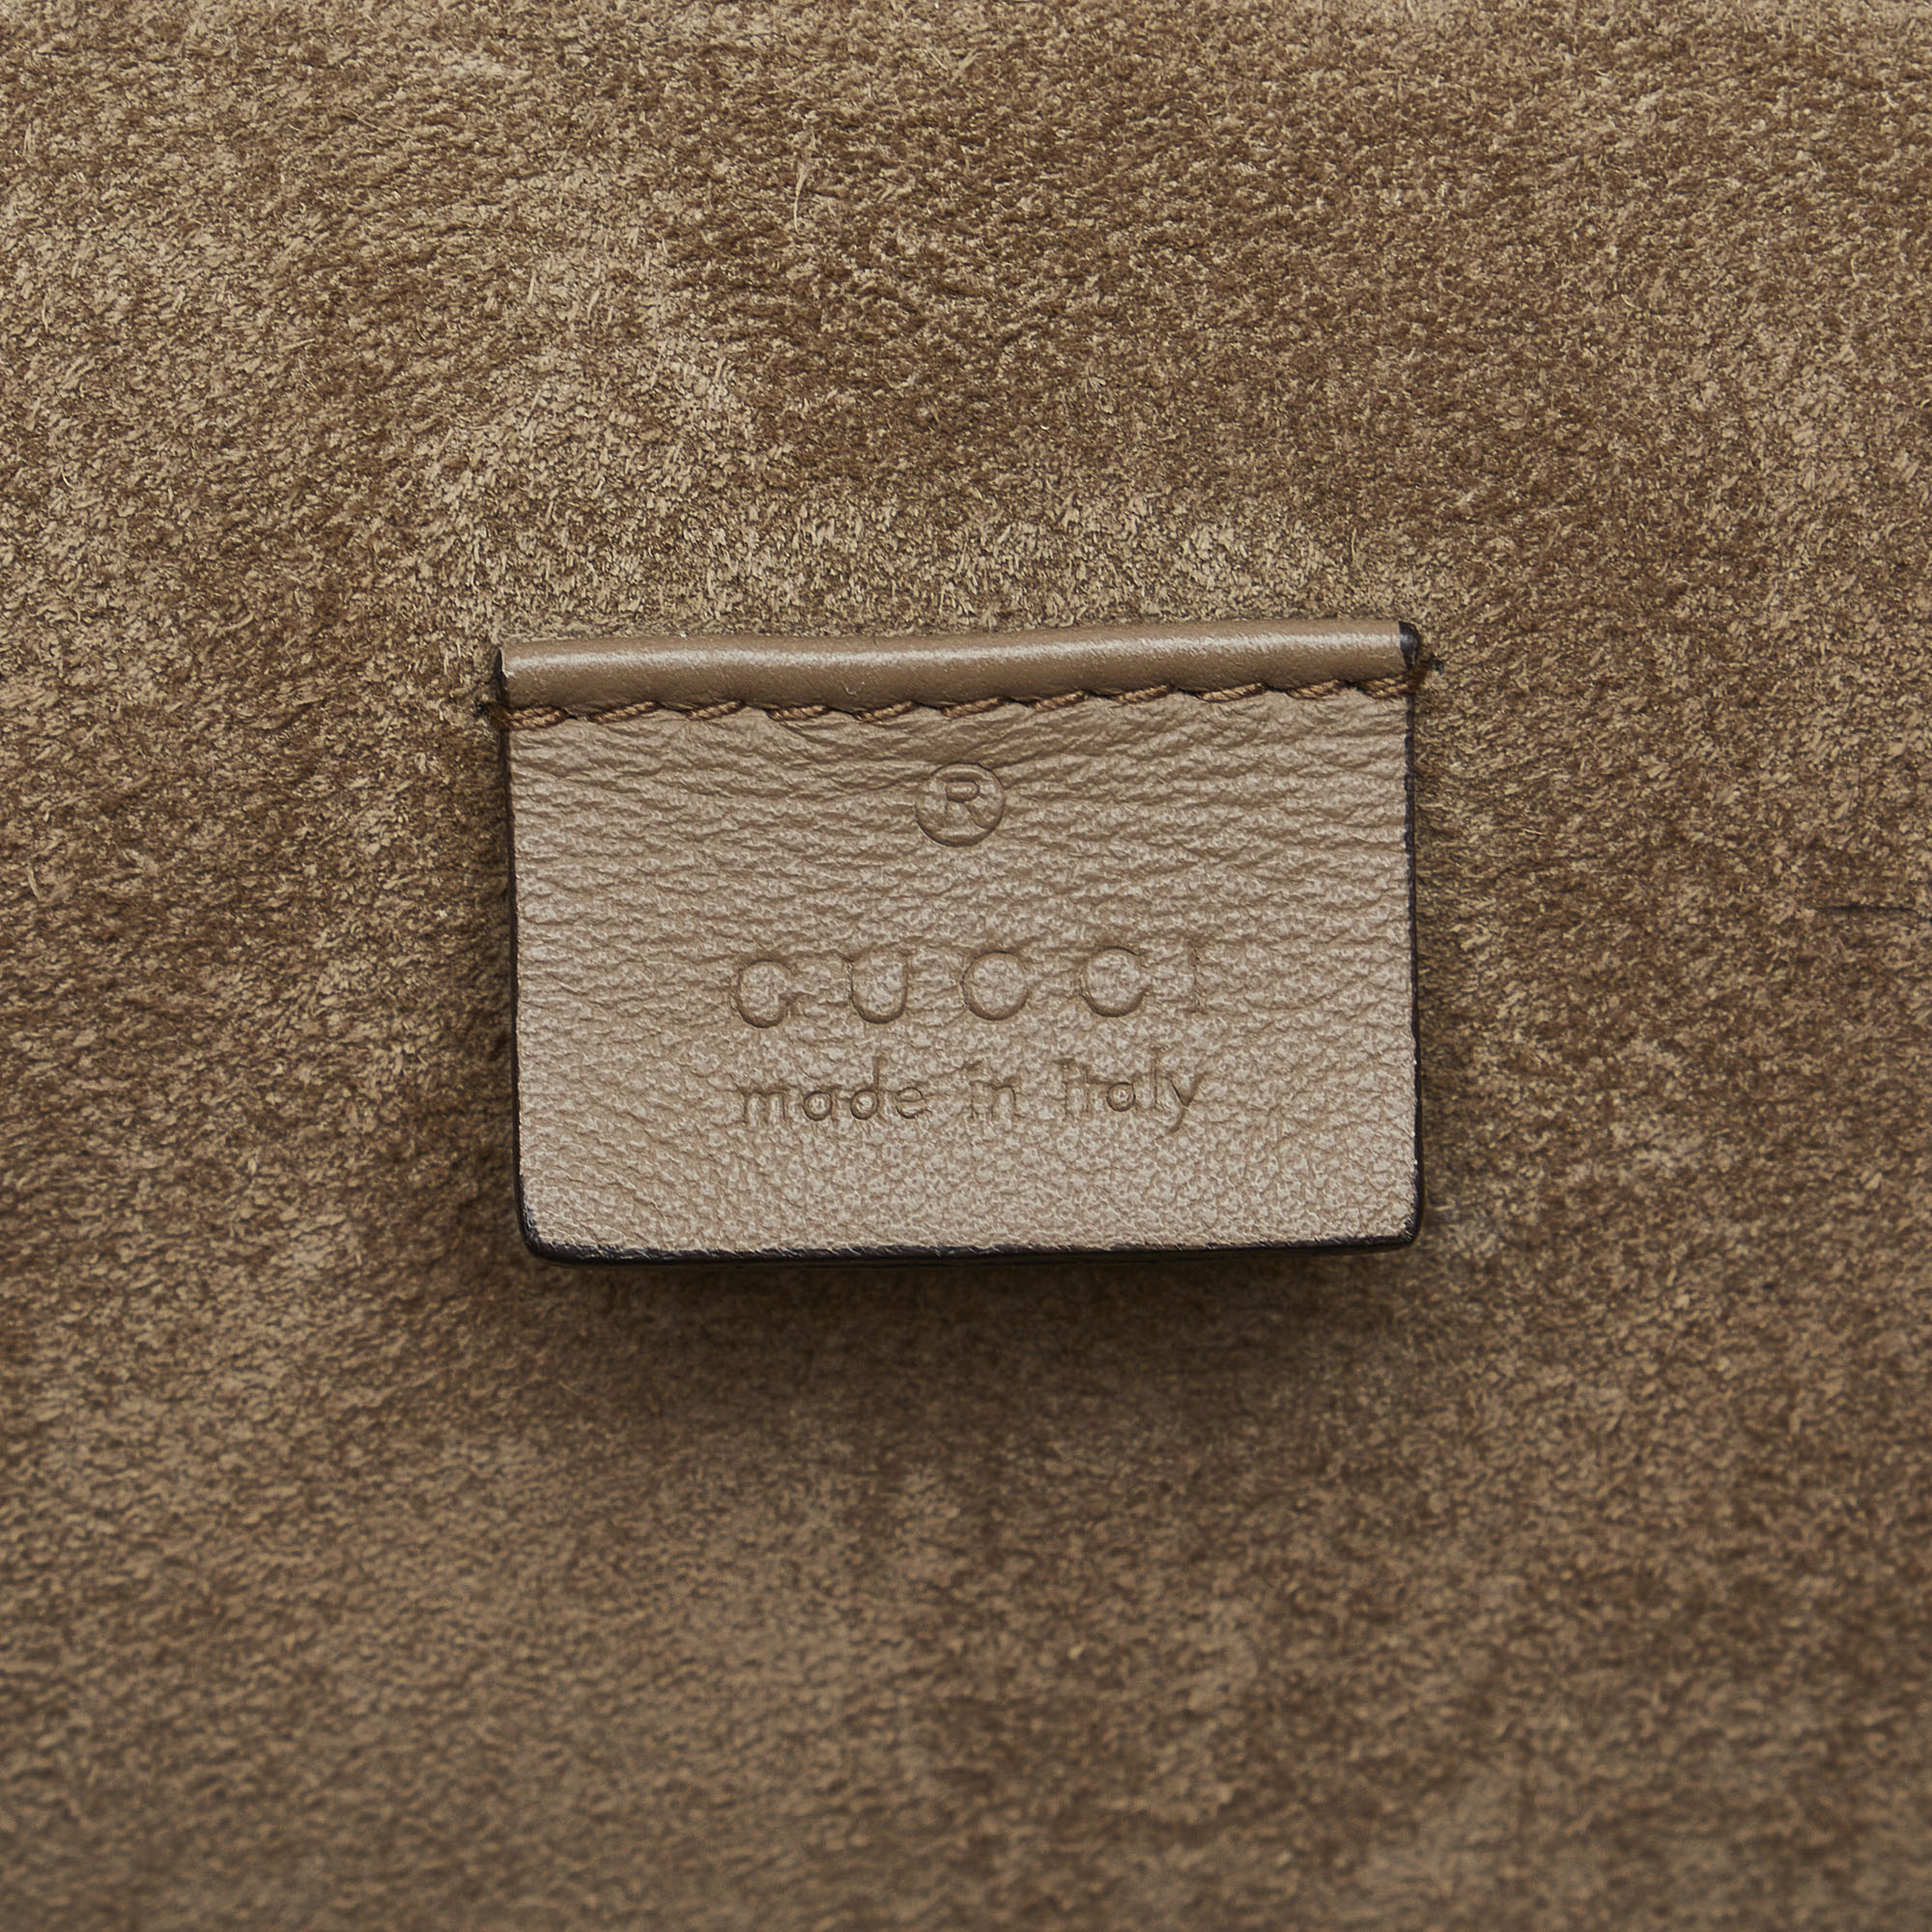 Gucci Multicolor GG Supreme Embroidered Dionysus Shoulder Bag